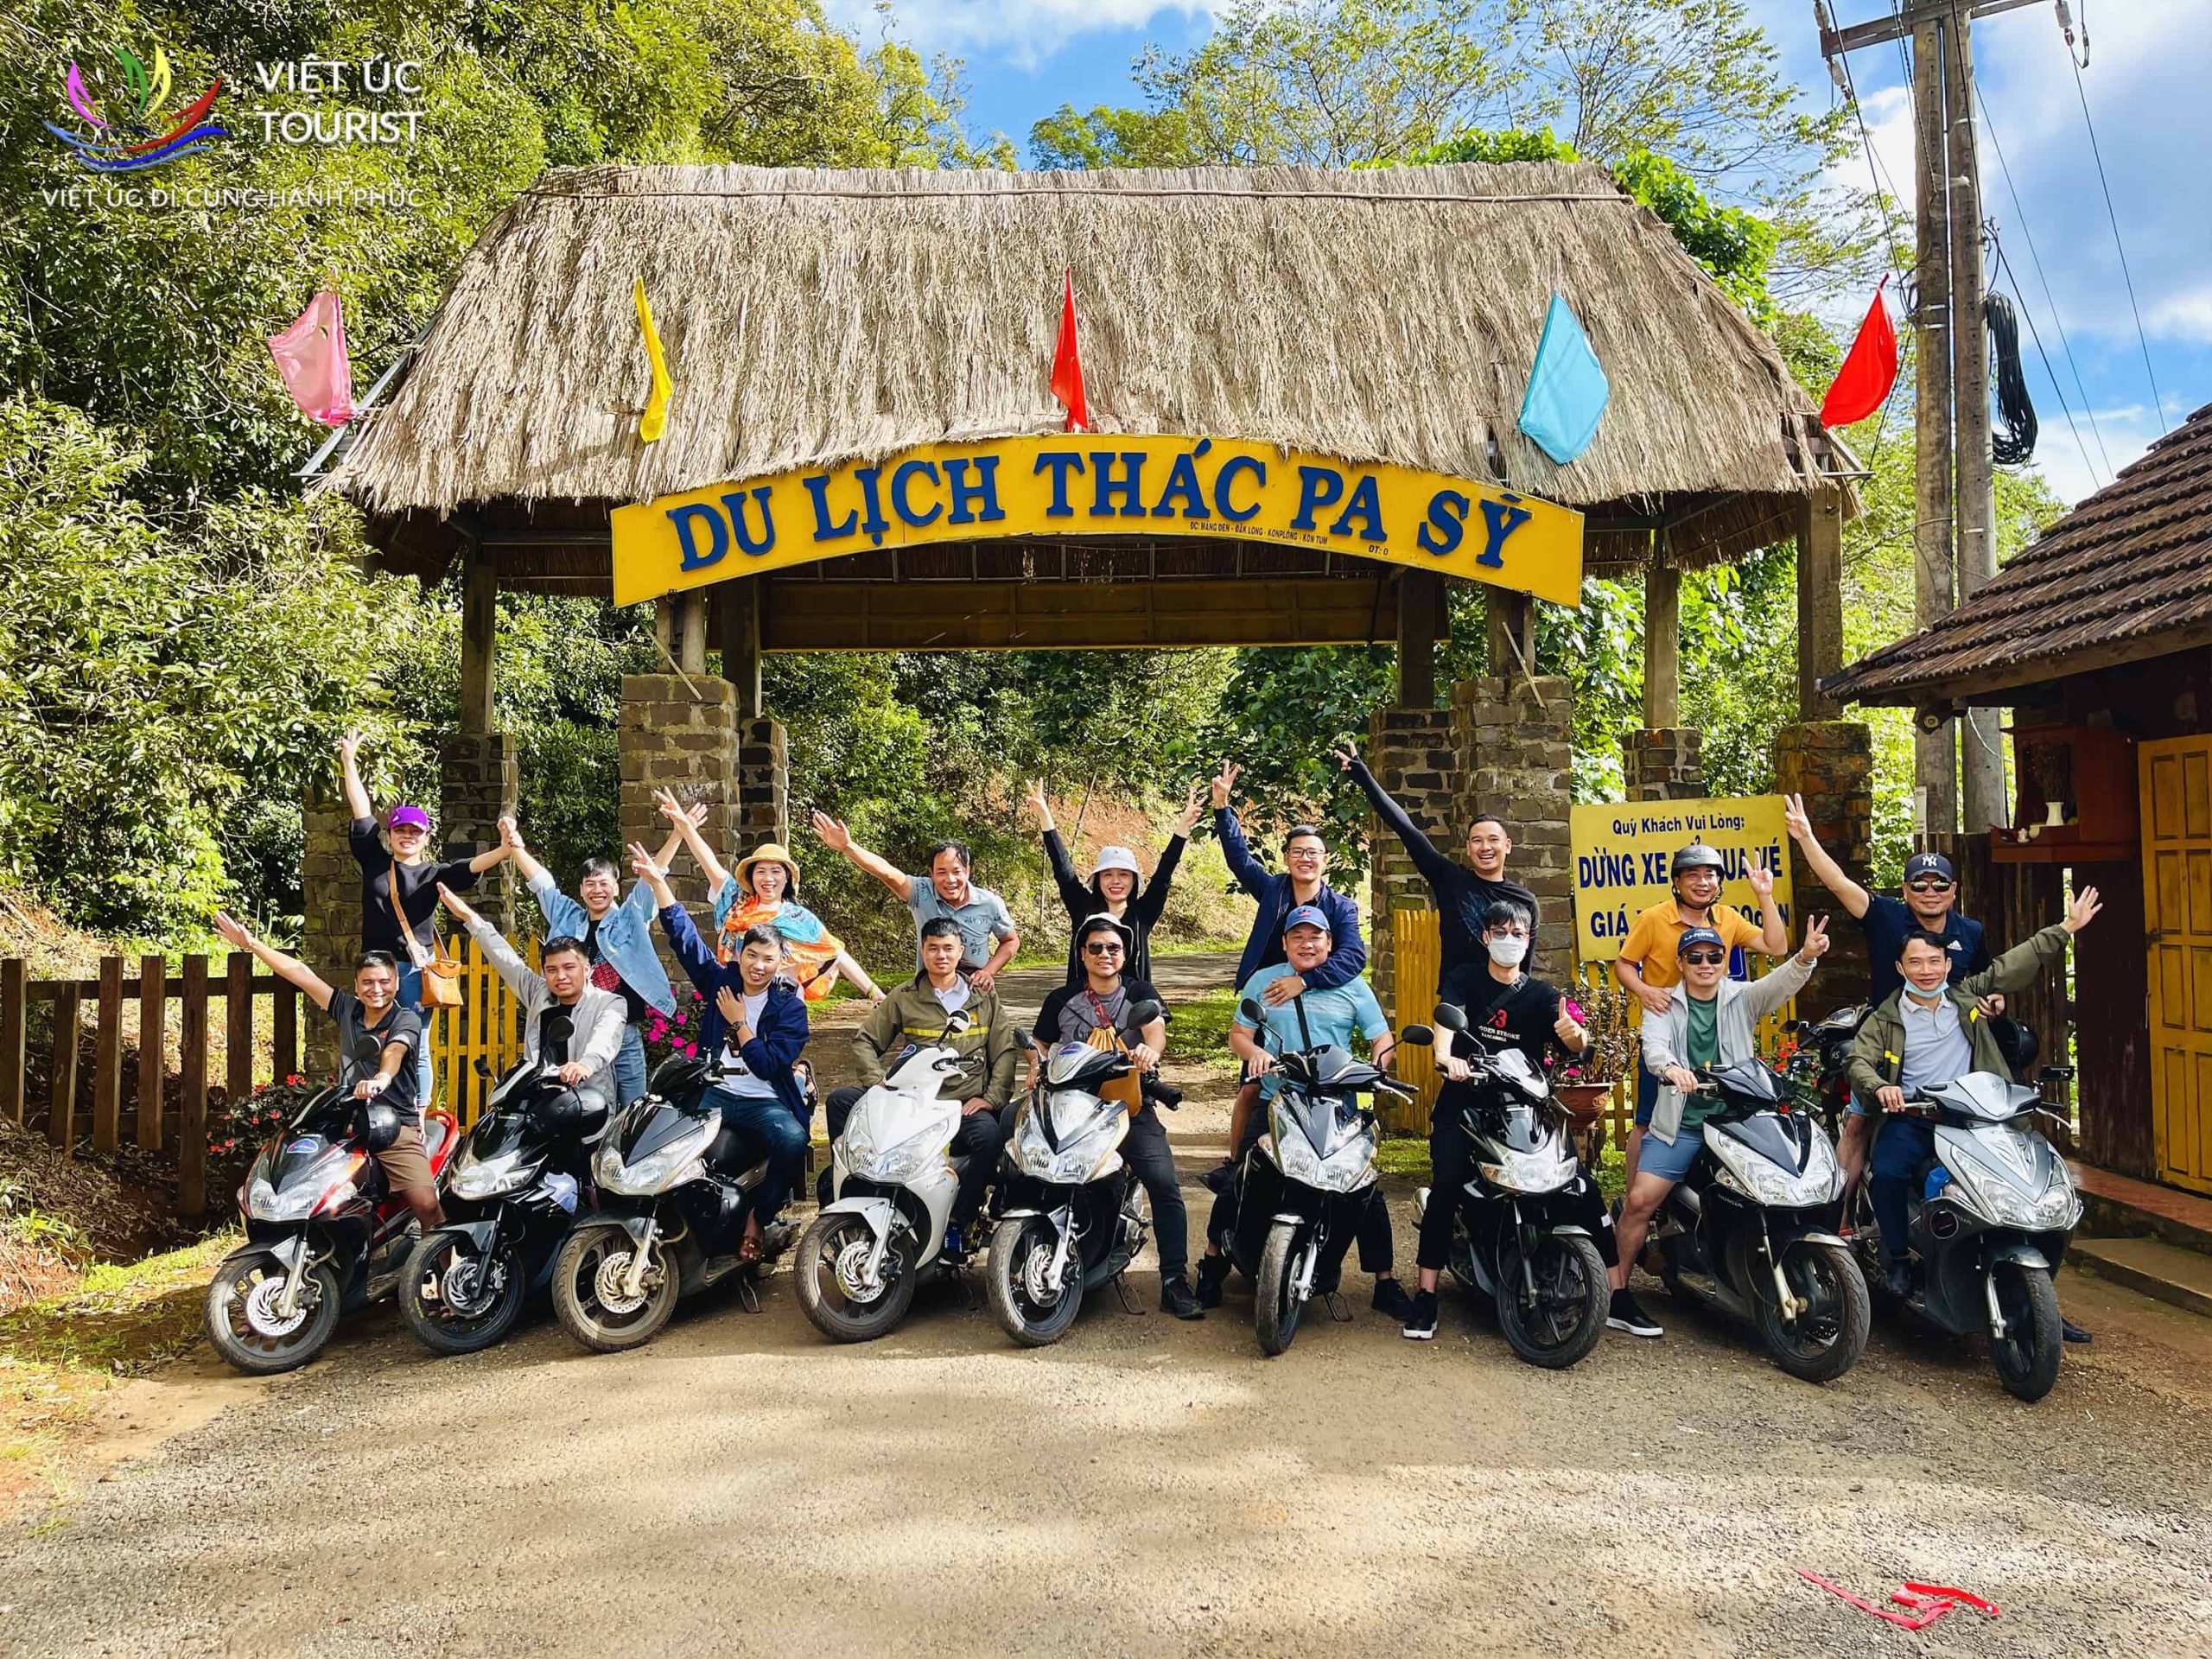 Dịch Vụ thuê xe máy, xe điện, xe đạp ở Măng Đen Việt Úc Tourist